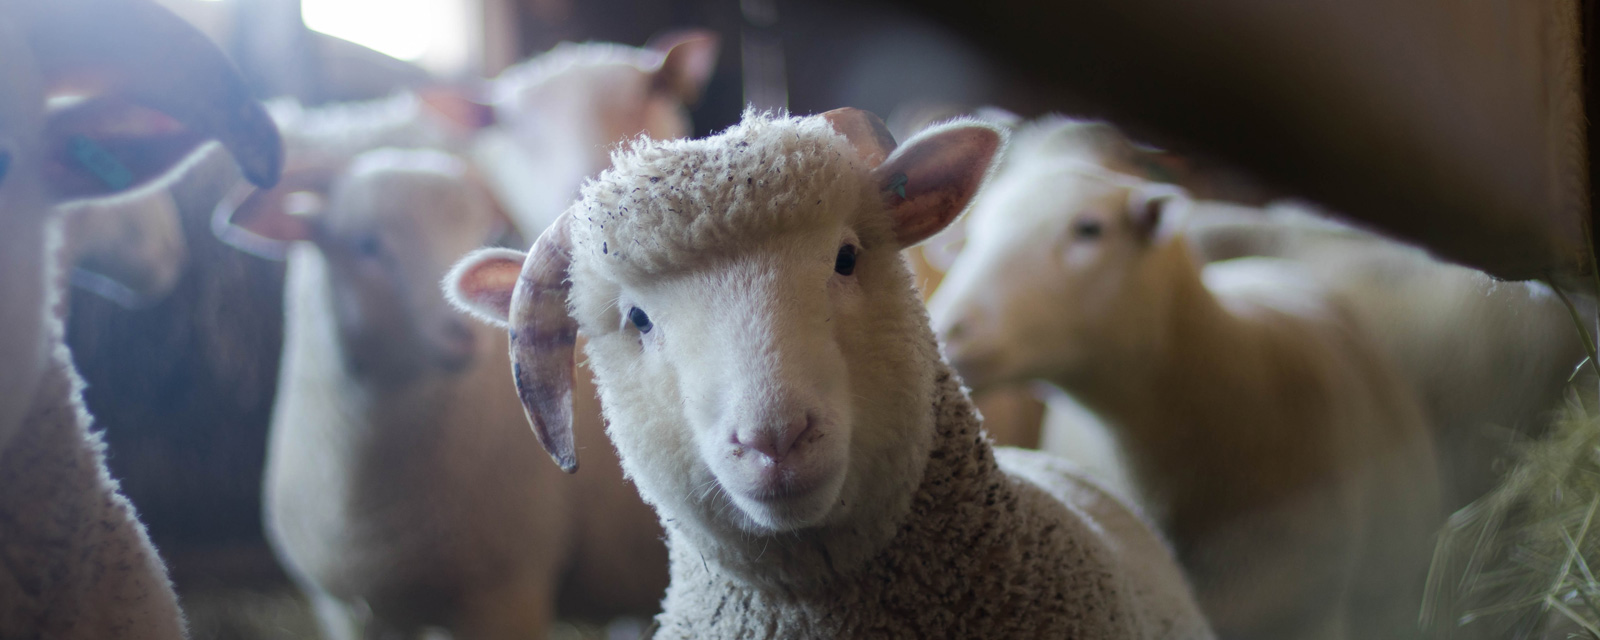 Aide aux petits investissements en élevage ovin/caprin